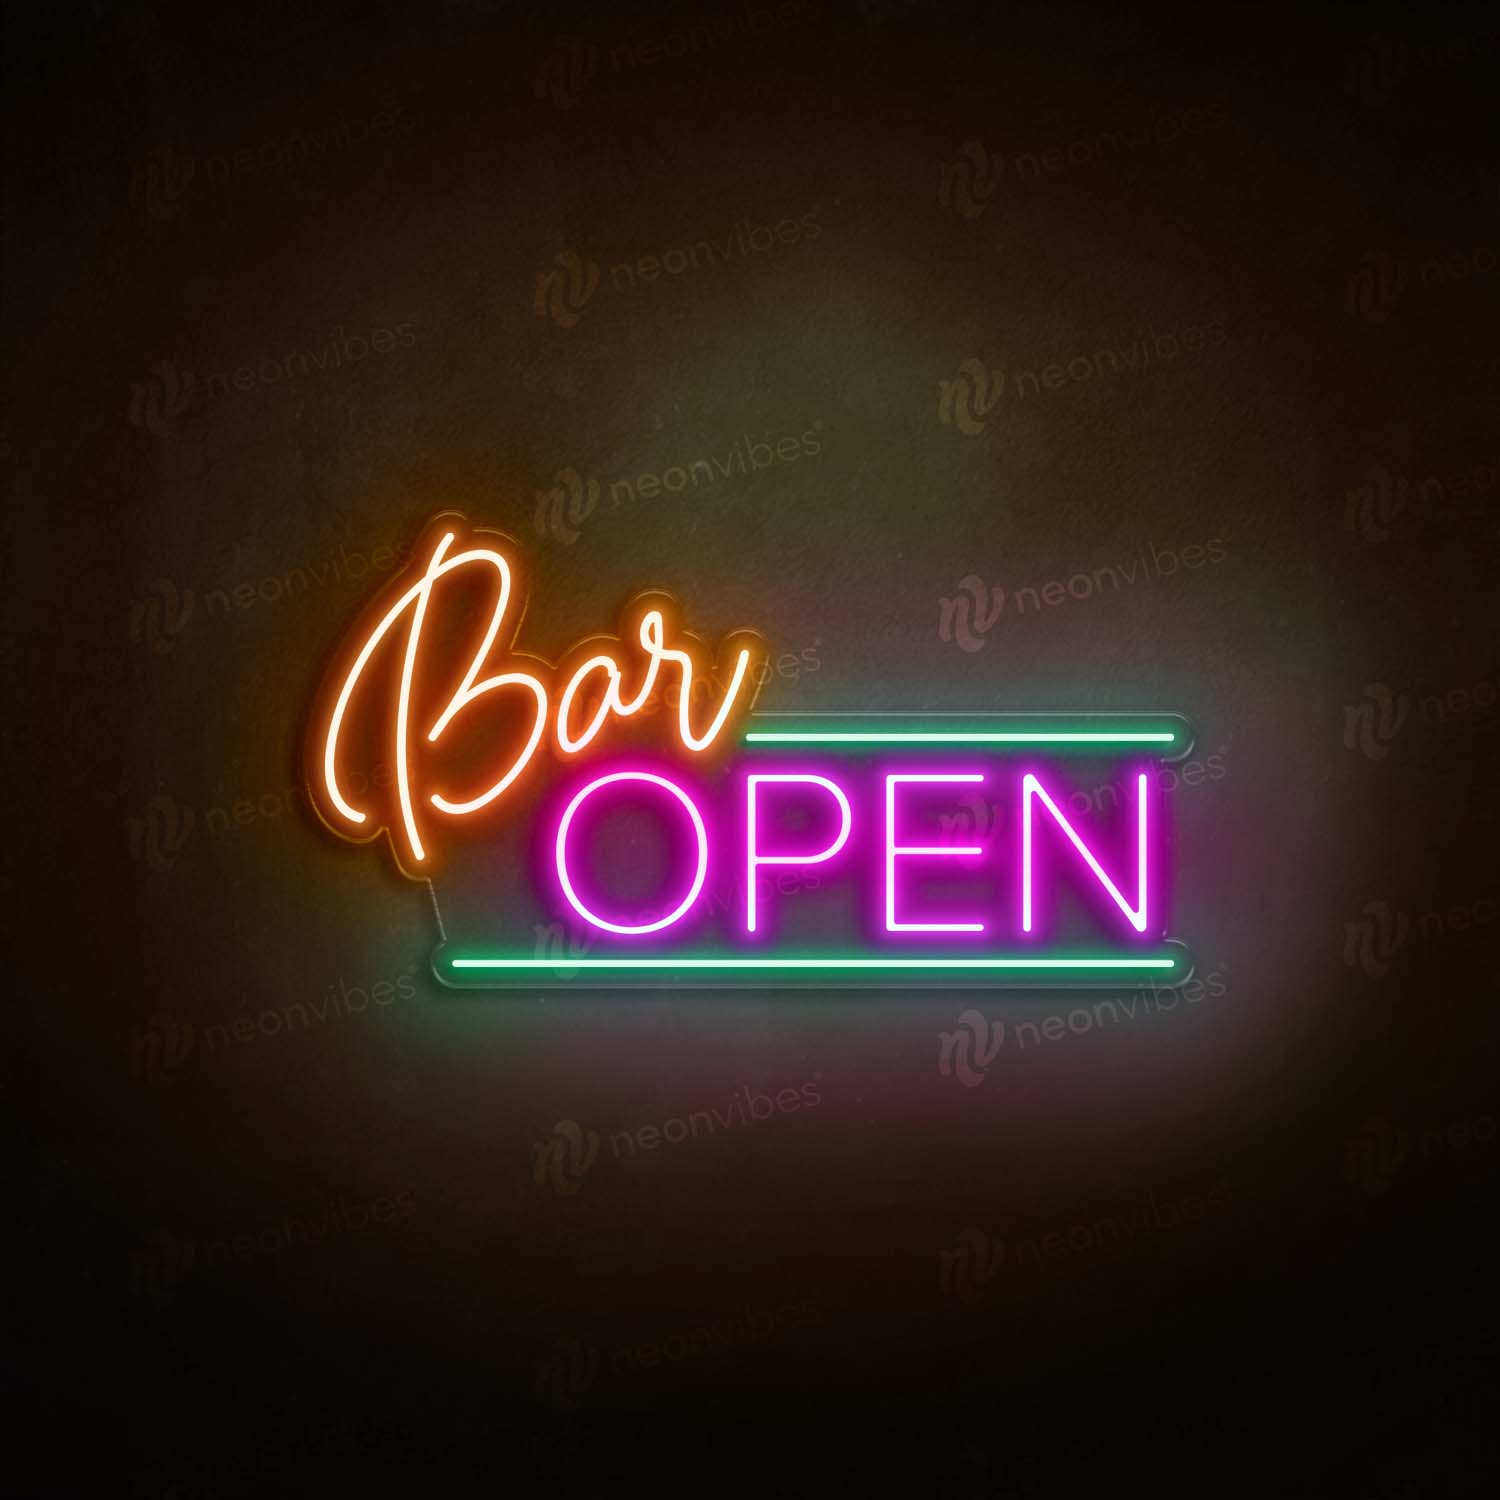 Bar Open V3 neon sign